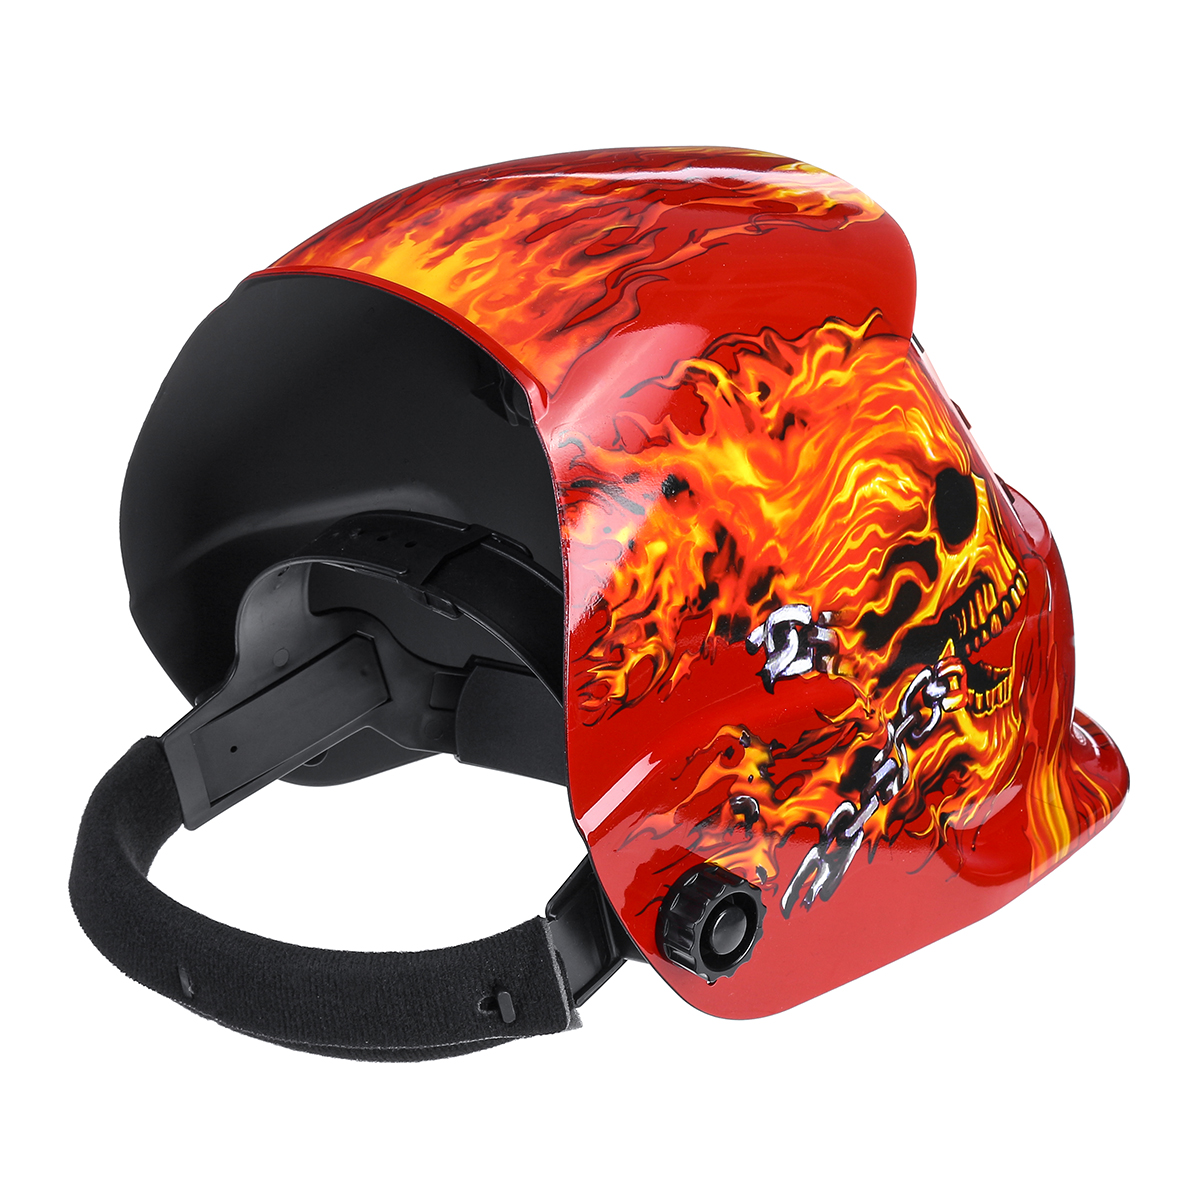 Solar-Auto-Darkening-Welding-Helmet-Len-Mask-Grinding-Welder-Protective-Mask-1625108-10